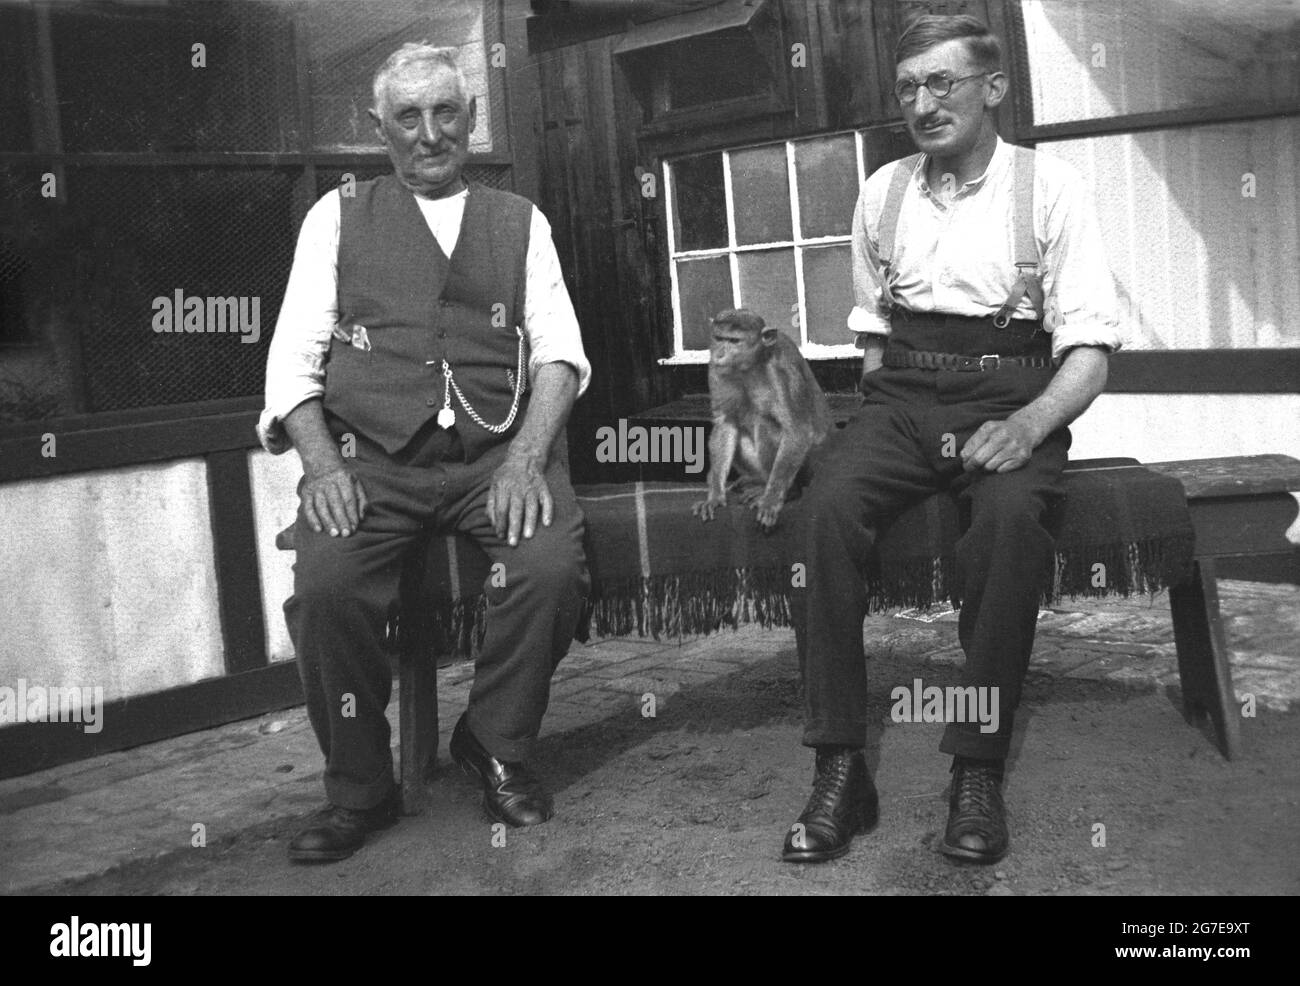 1930er Jahre, historisch, zwei arbeitende Männer, möglicherweise Bauern, in der traditionellen männlichen Kleidung der Zeit, einer mit Zahnspangen, der ältere Mann mit einer Weste mit einer Taschenuhr an einer Kette, sitzt draußen auf einem Teppich über einer Holzbank mit einem kleinen Affen sitzt mit ihnen, Mirfield, Yorkshire, England, VEREINIGTES KÖNIGREICH Stockfoto